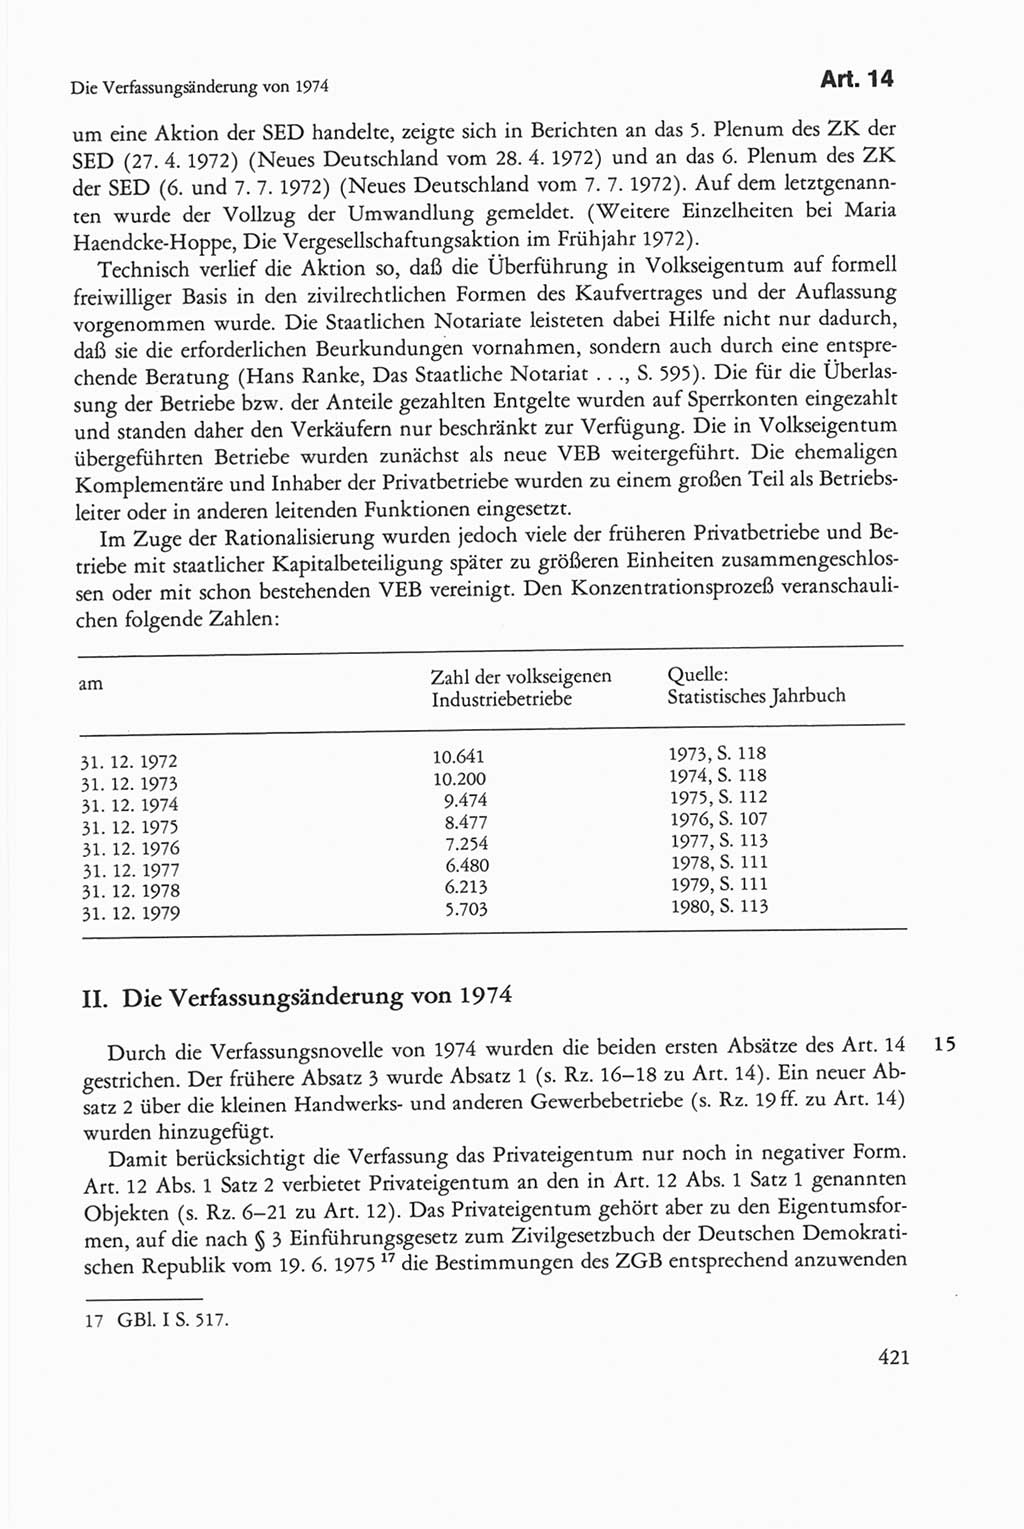 Die sozialistische Verfassung der Deutschen Demokratischen Republik (DDR), Kommentar mit einem Nachtrag 1997, Seite 421 (Soz. Verf. DDR Komm. Nachtr. 1997, S. 421)